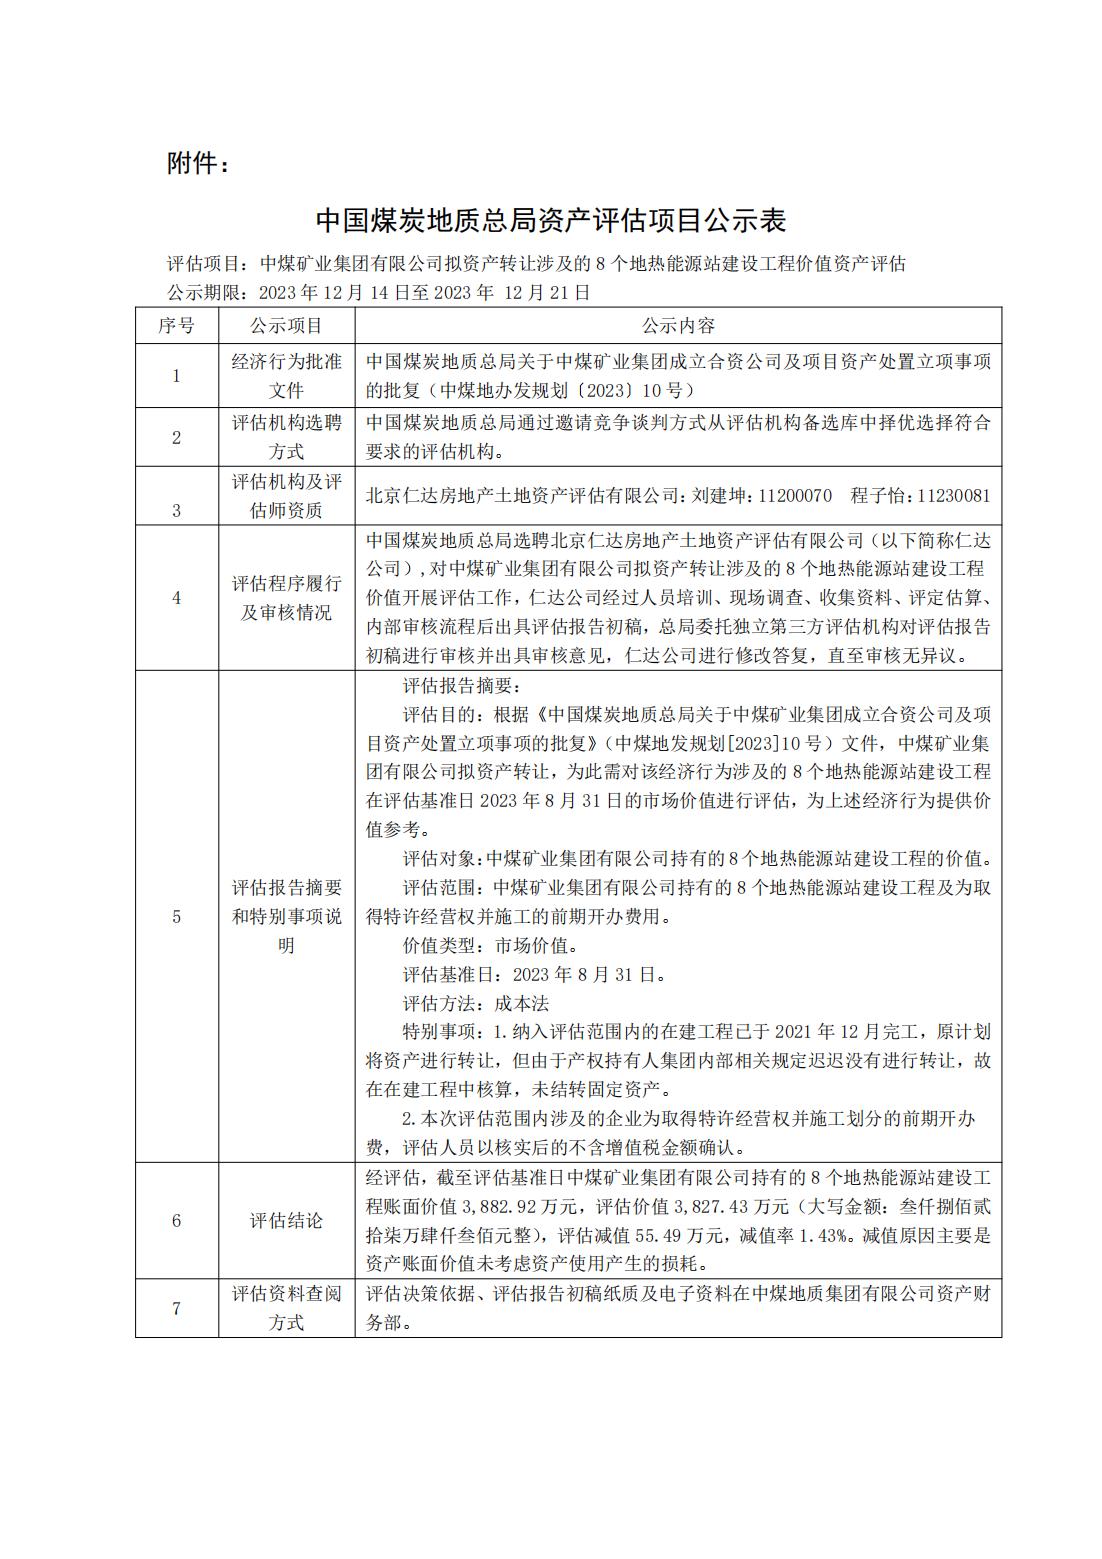 中国煤炭地质总局关于饶阳项目部分资产评估结果的公示(1)_00.jpg